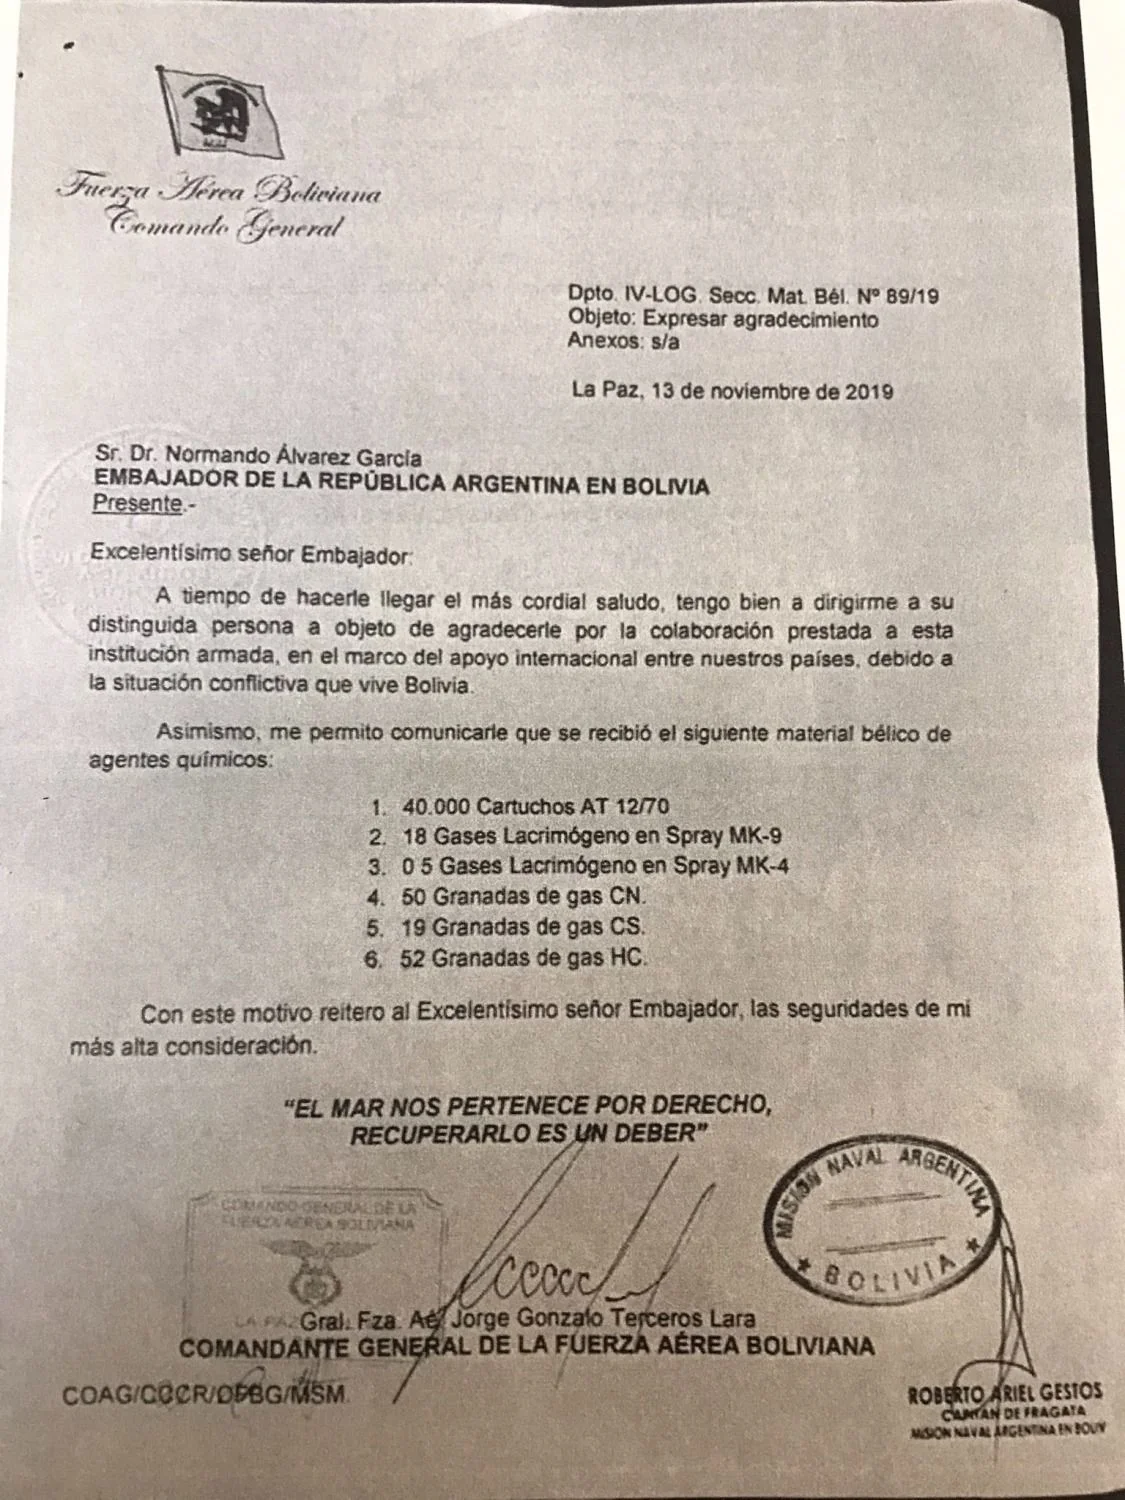 HASTA LAS MANOS: Armas a Bolivia documentos hallados en el Ministerio de Defensa comprometen a Macri y Bullrich